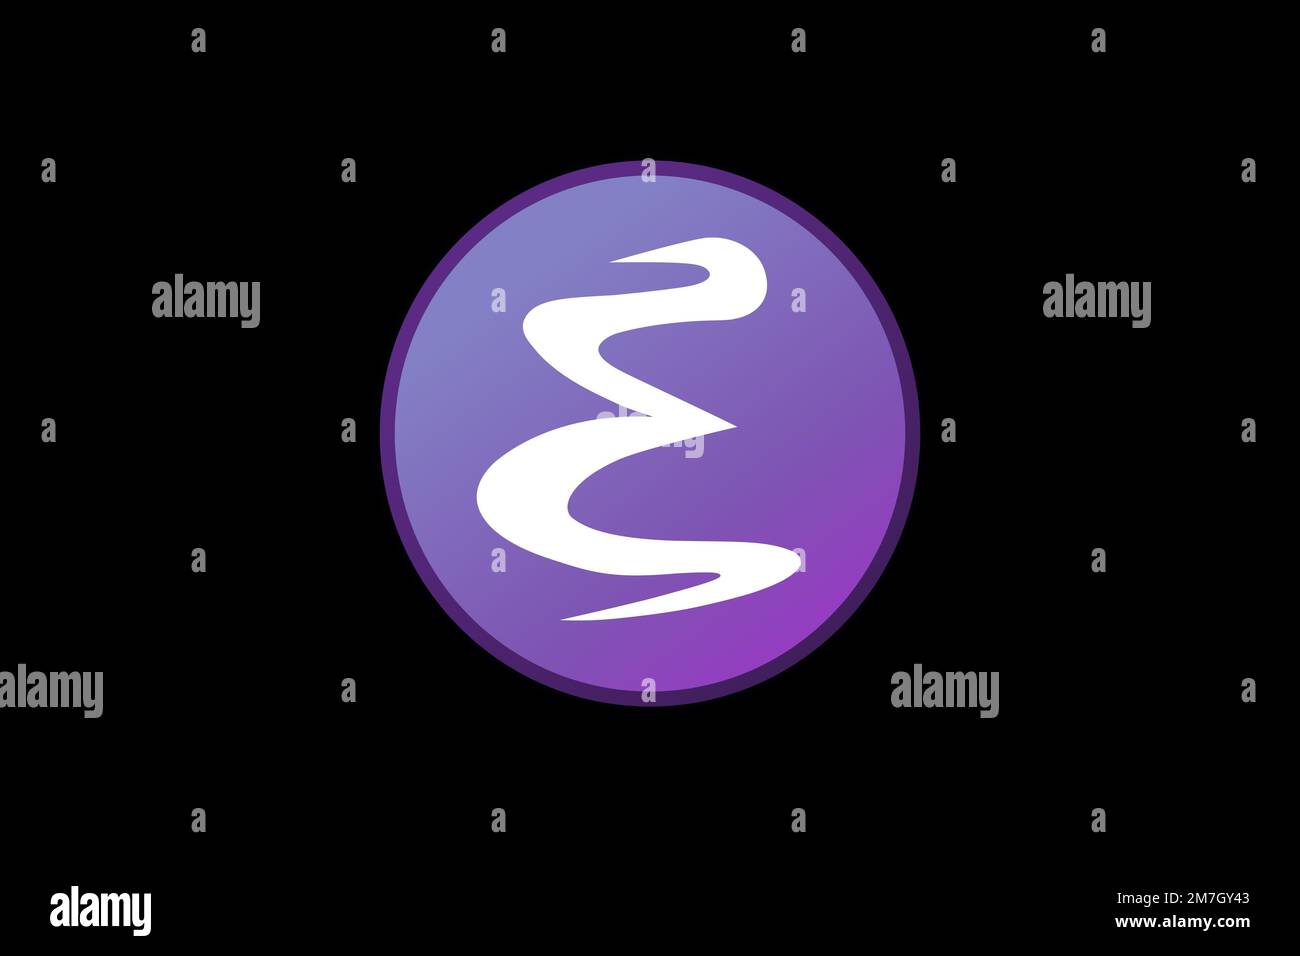 Emacs, Logo, Black background Stock Photo